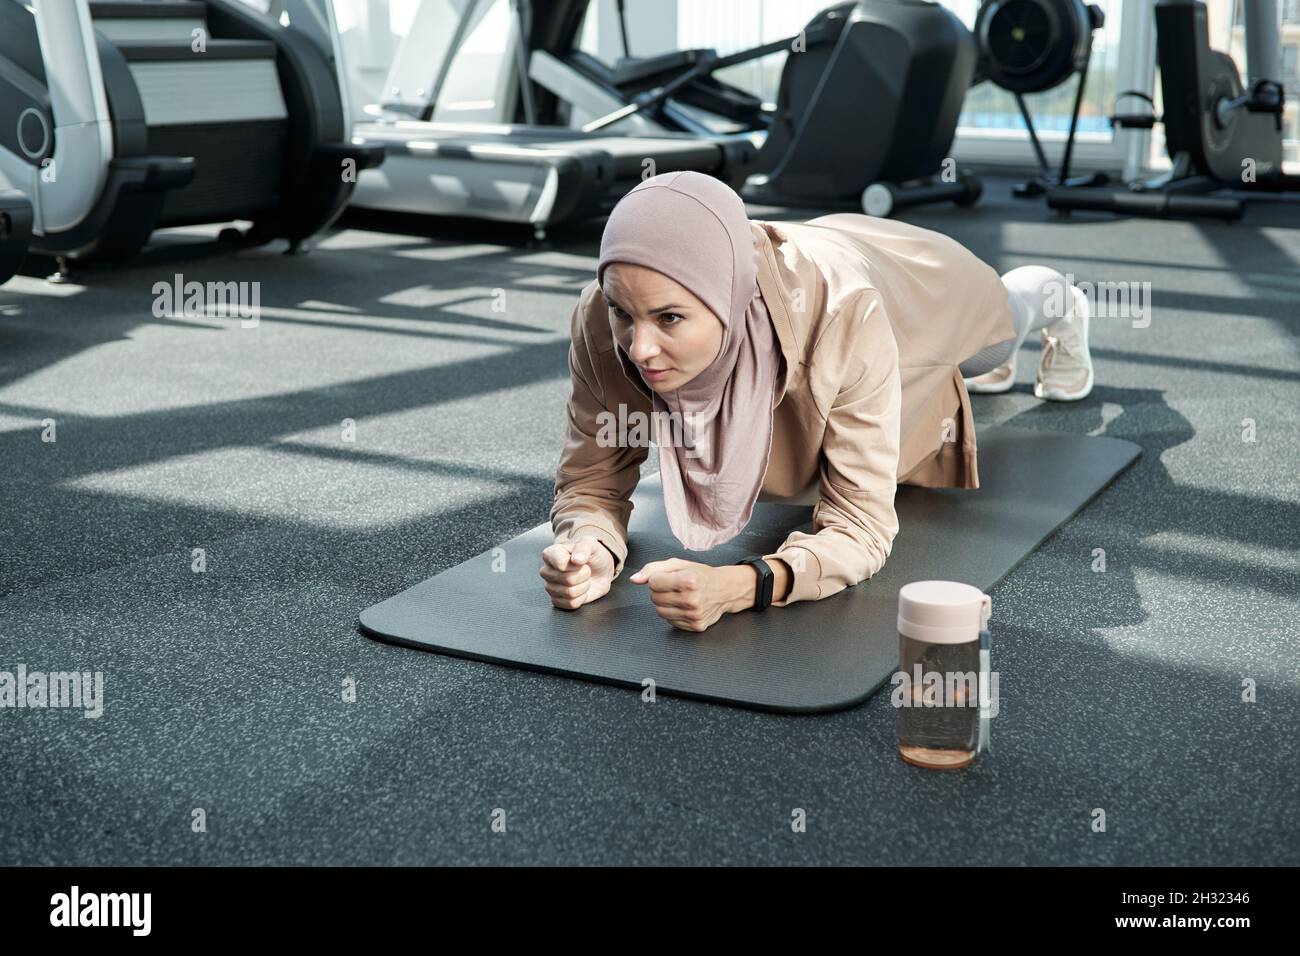 Giovane donna in hijab e abbigliamento sportivo facendo fatica mentre si fa l'asse sul tappeto nel centro fitness o in palestra Foto Stock